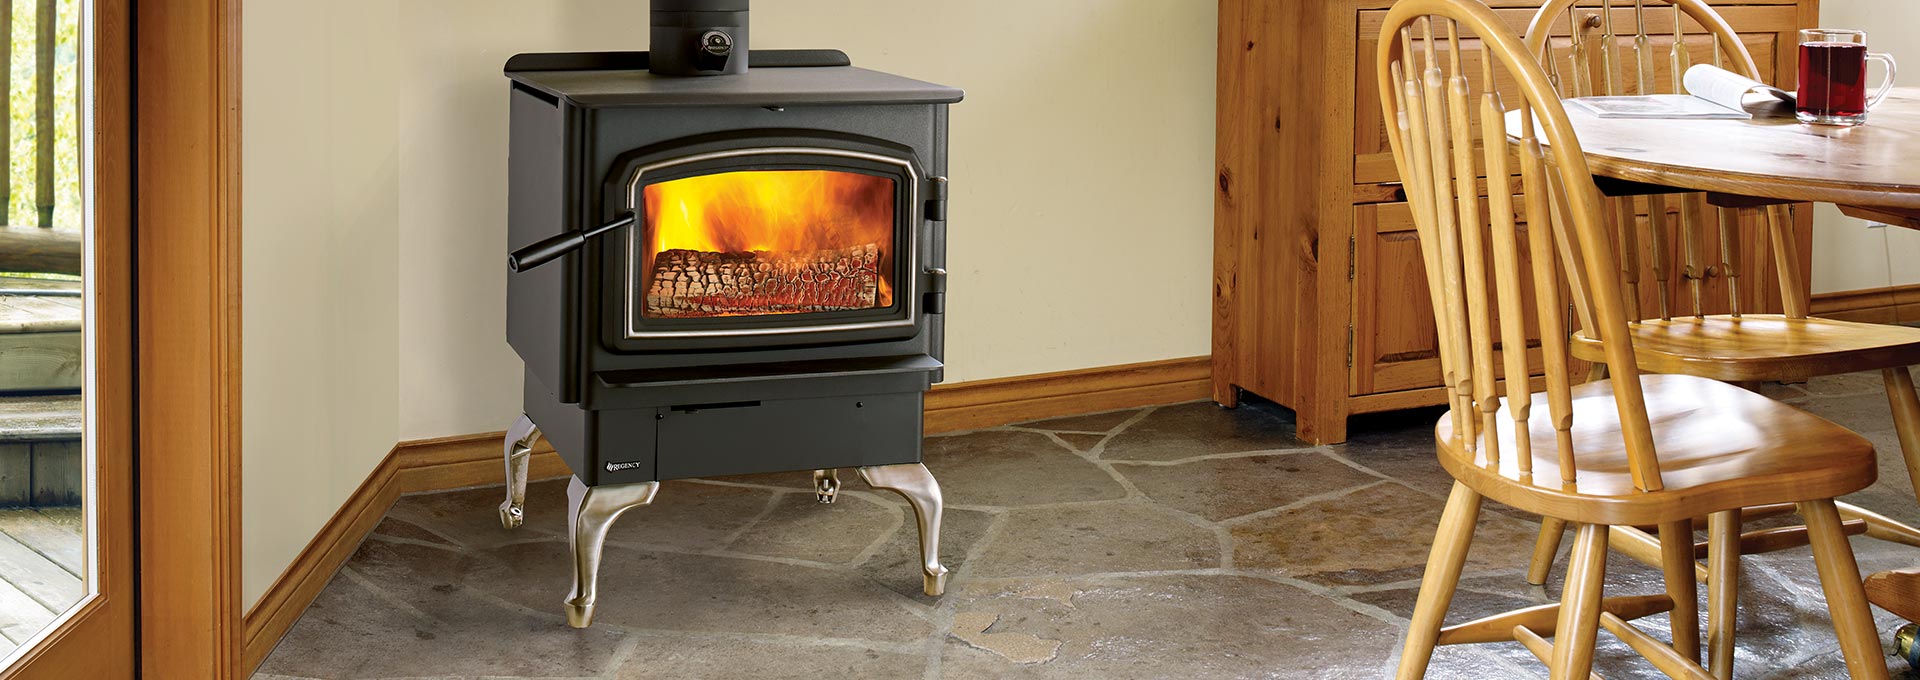 Wood Burning Stove Fireplace Inspirational Wood Stoves